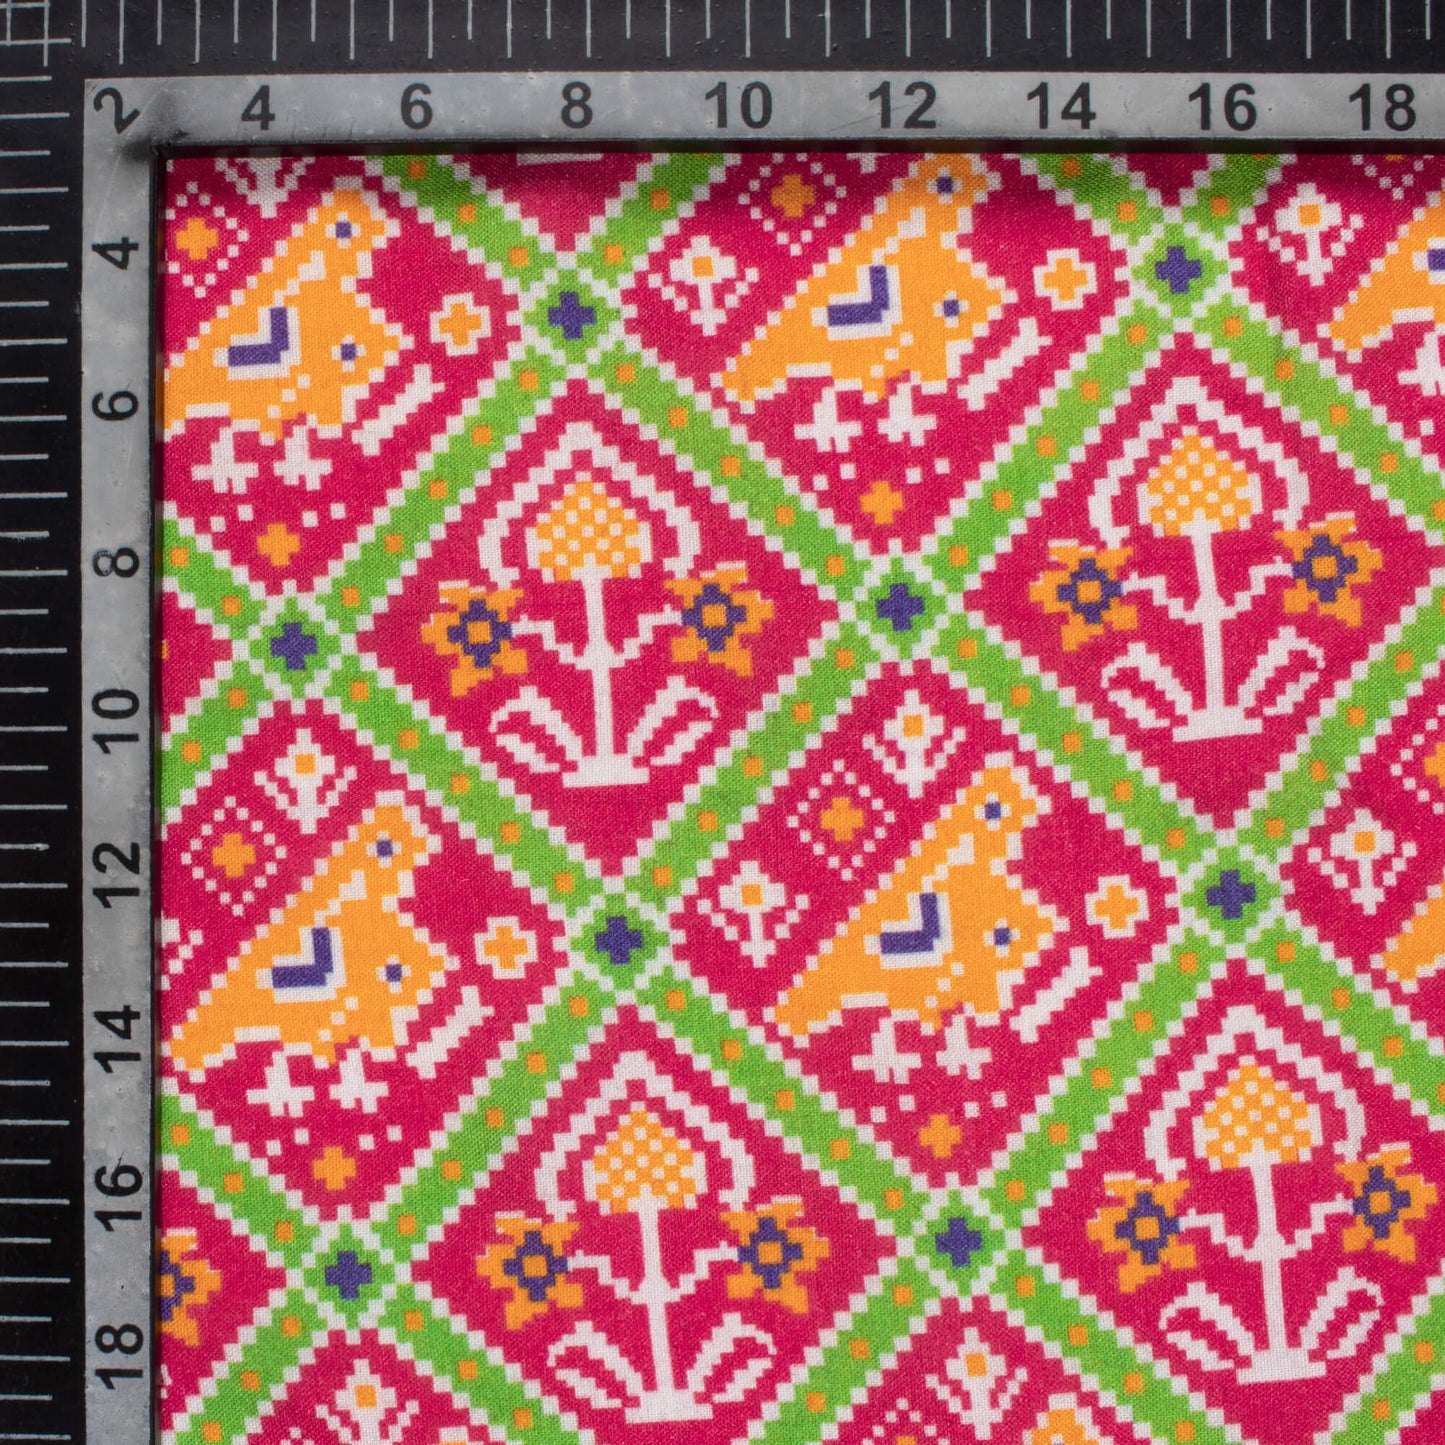 Magenta Pink And Paris Green Patola Pattern Digital Print Viscose Rayon Fabric (Width 58 Inches)